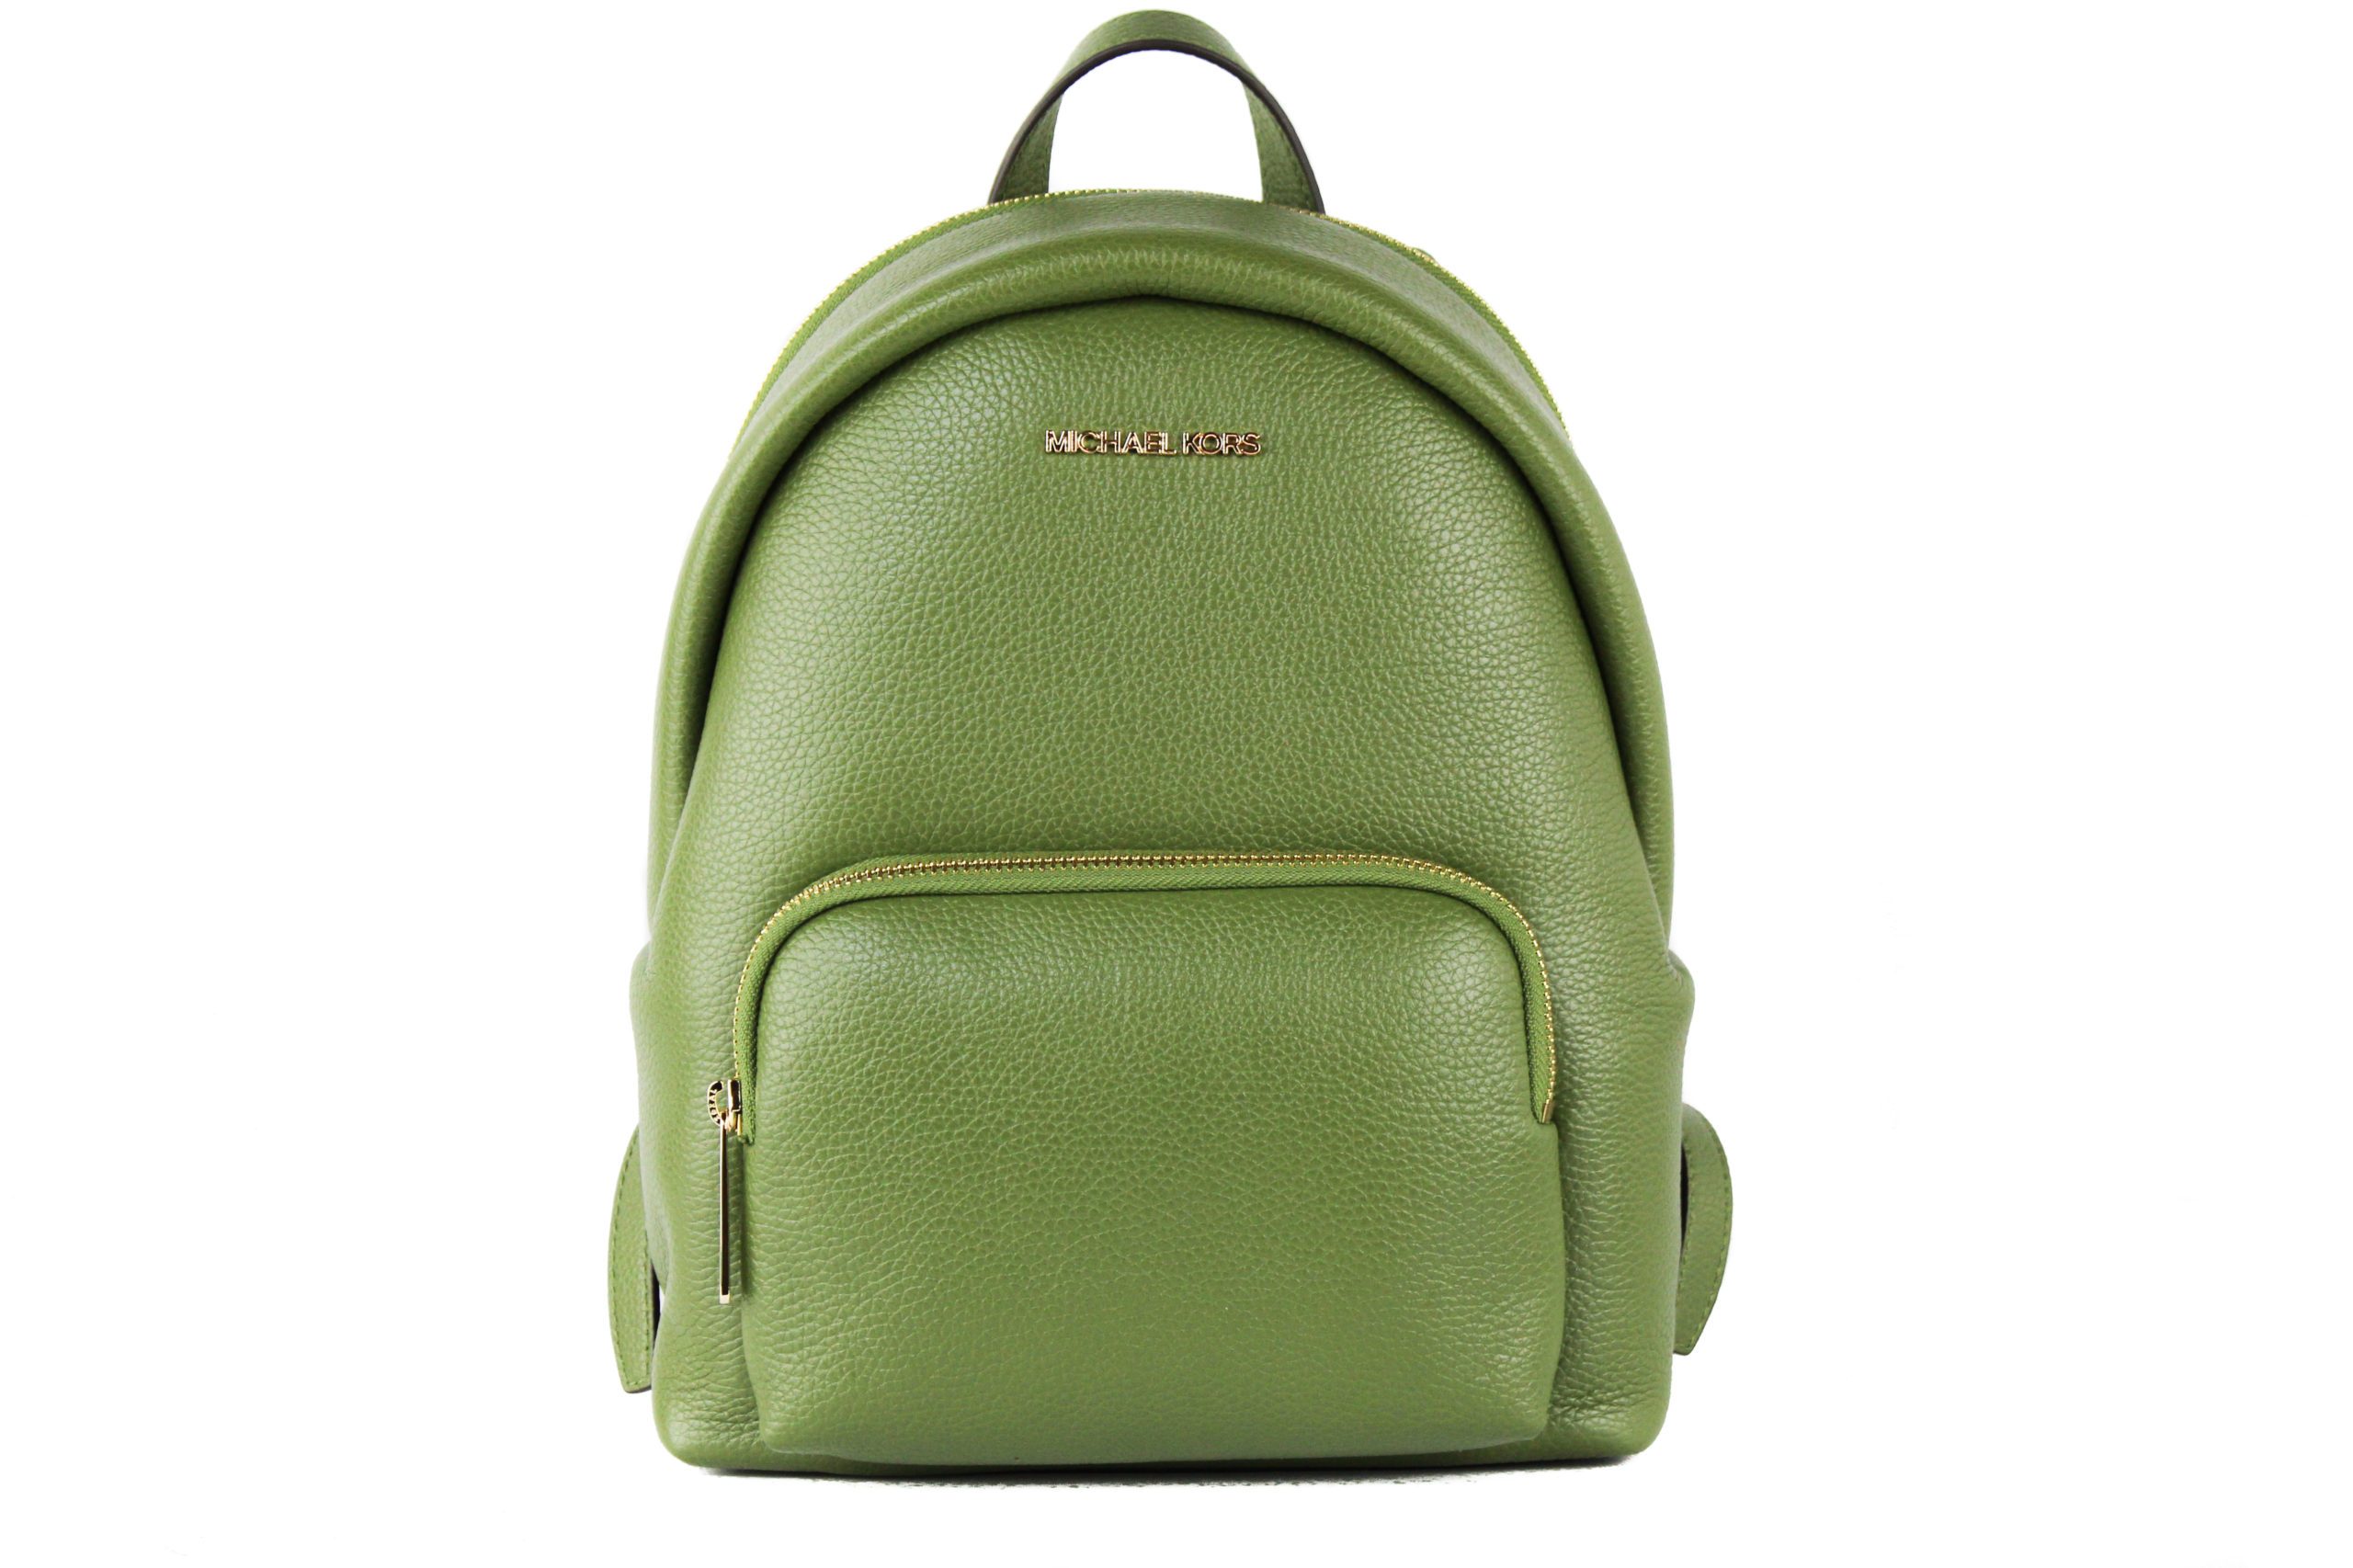 Michael Kors Women's Erin Backpack Green 57036